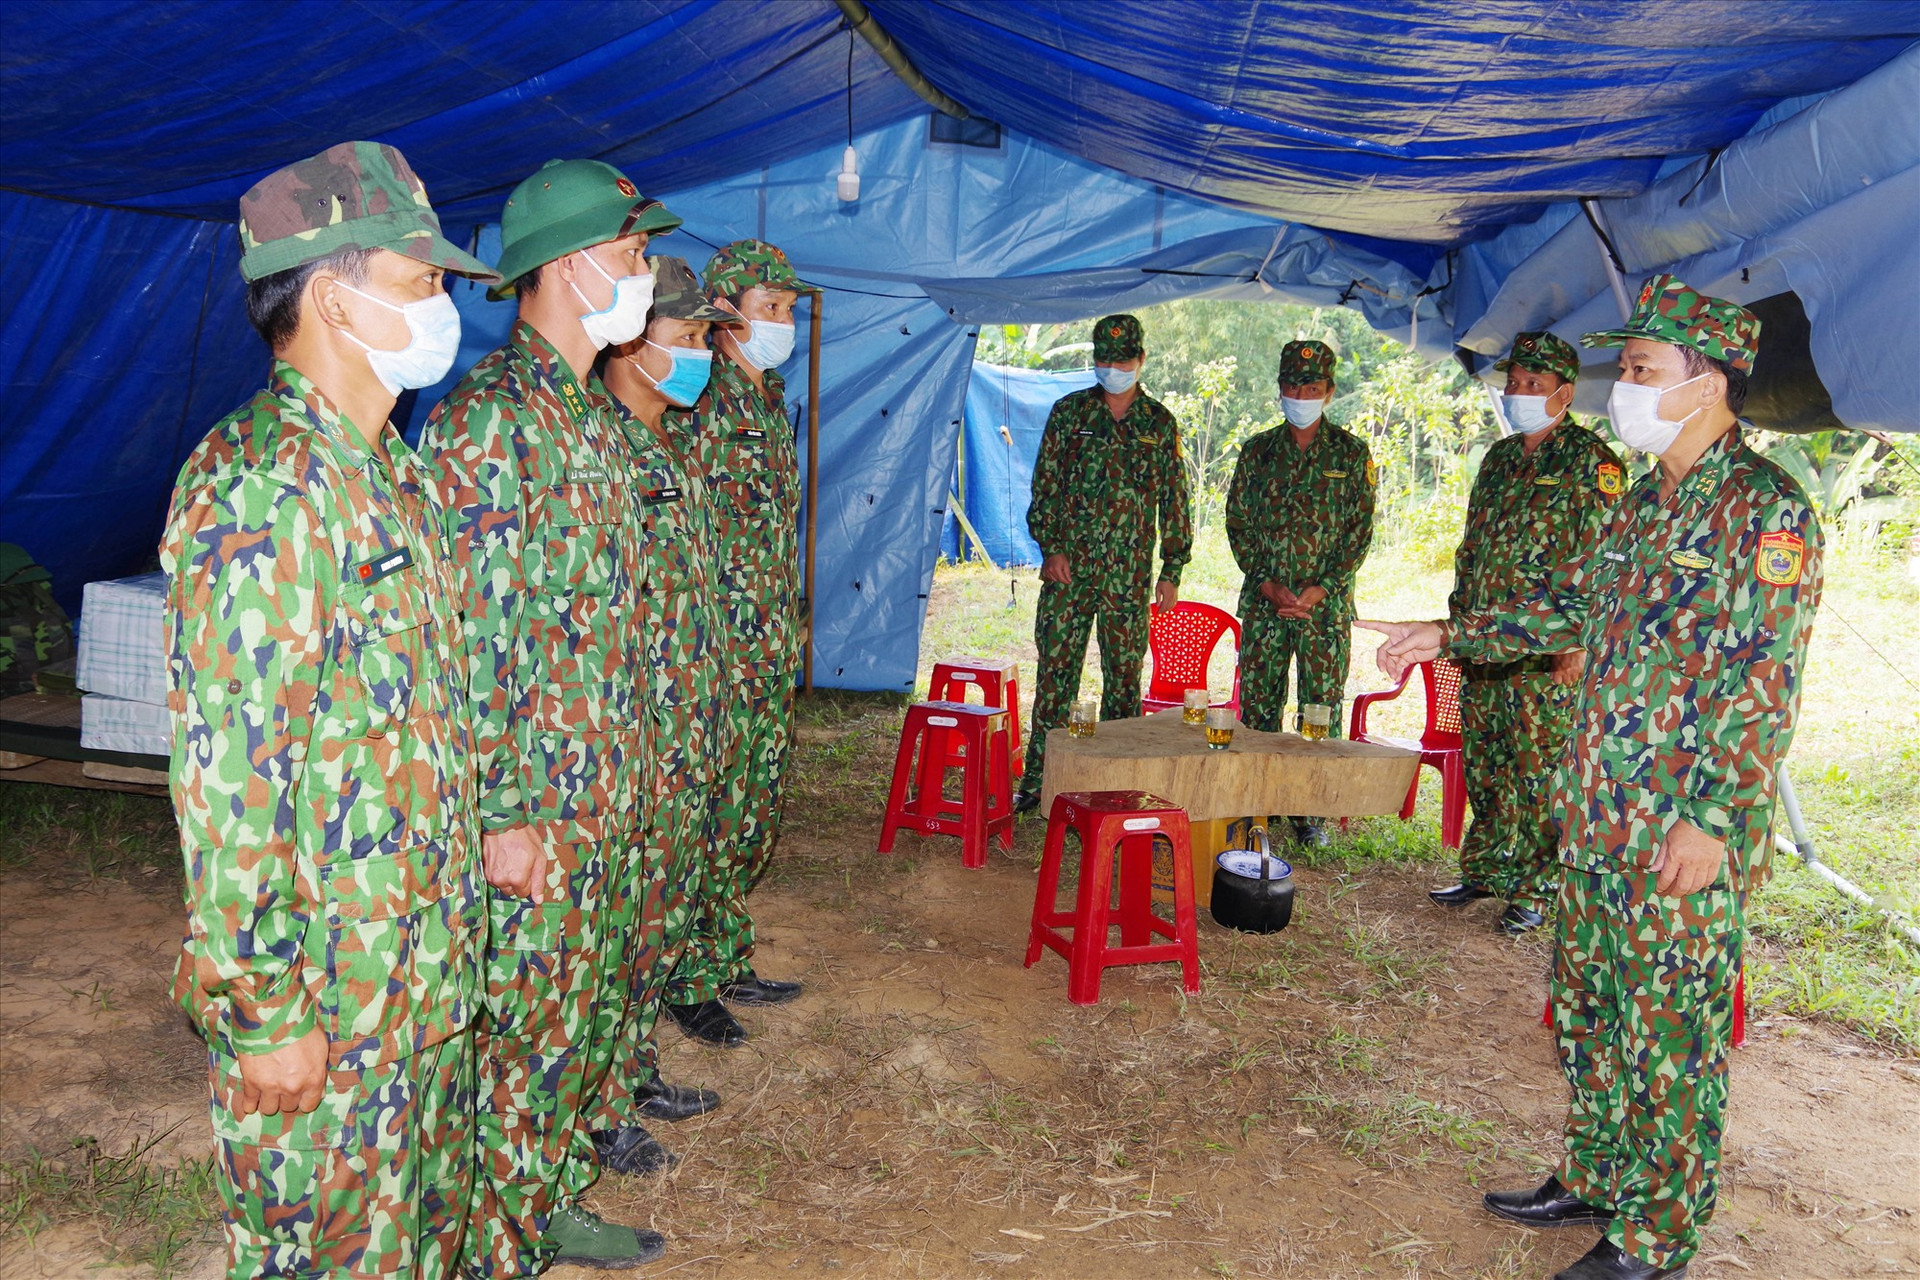 Đại tá Nguyễn Bá Thông - Chỉ huy trưởng BĐBP tỉnh (bên phải) kiểm tra, động viên lực lượng cắm chốt phòng chống dịch bệnh Covid-19 tại biên giới của huyện Nam Giang. Ảnh VĂN VINH